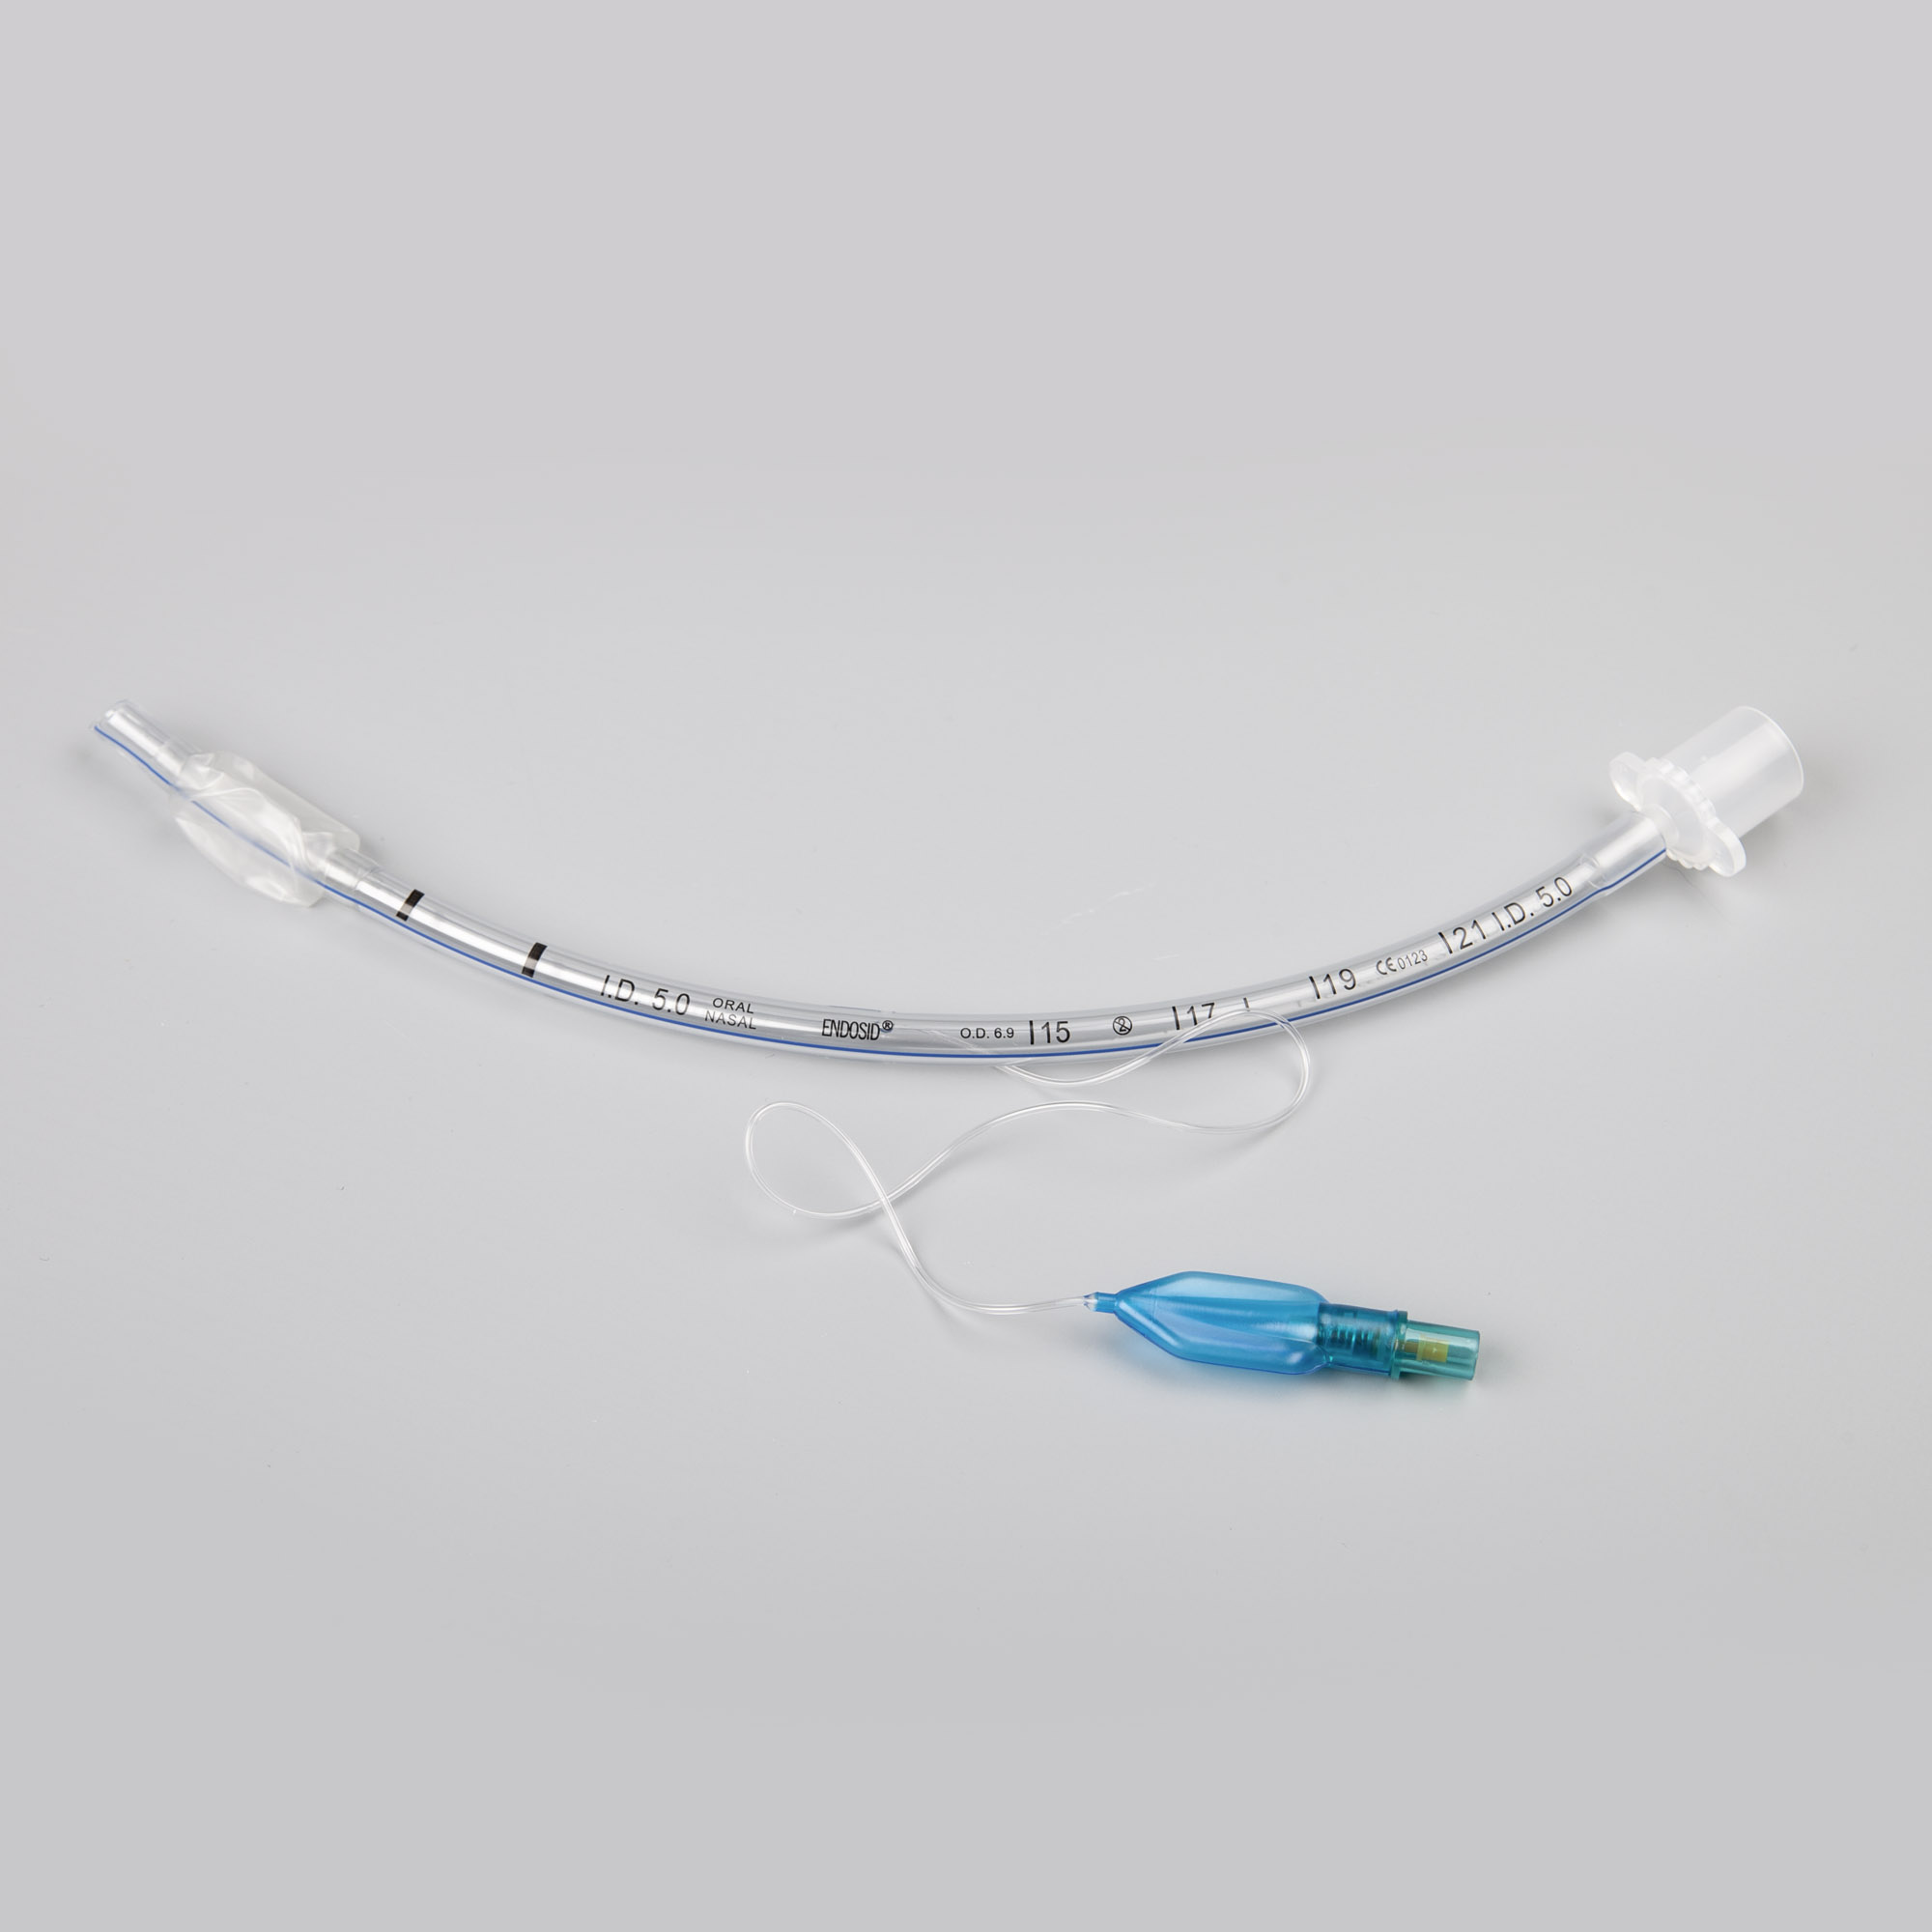 Endosid®-Tubus nasal/oral mit Cuff, Murphy-Auge und Mandrin I.D. 5,5 mm (CH 22)